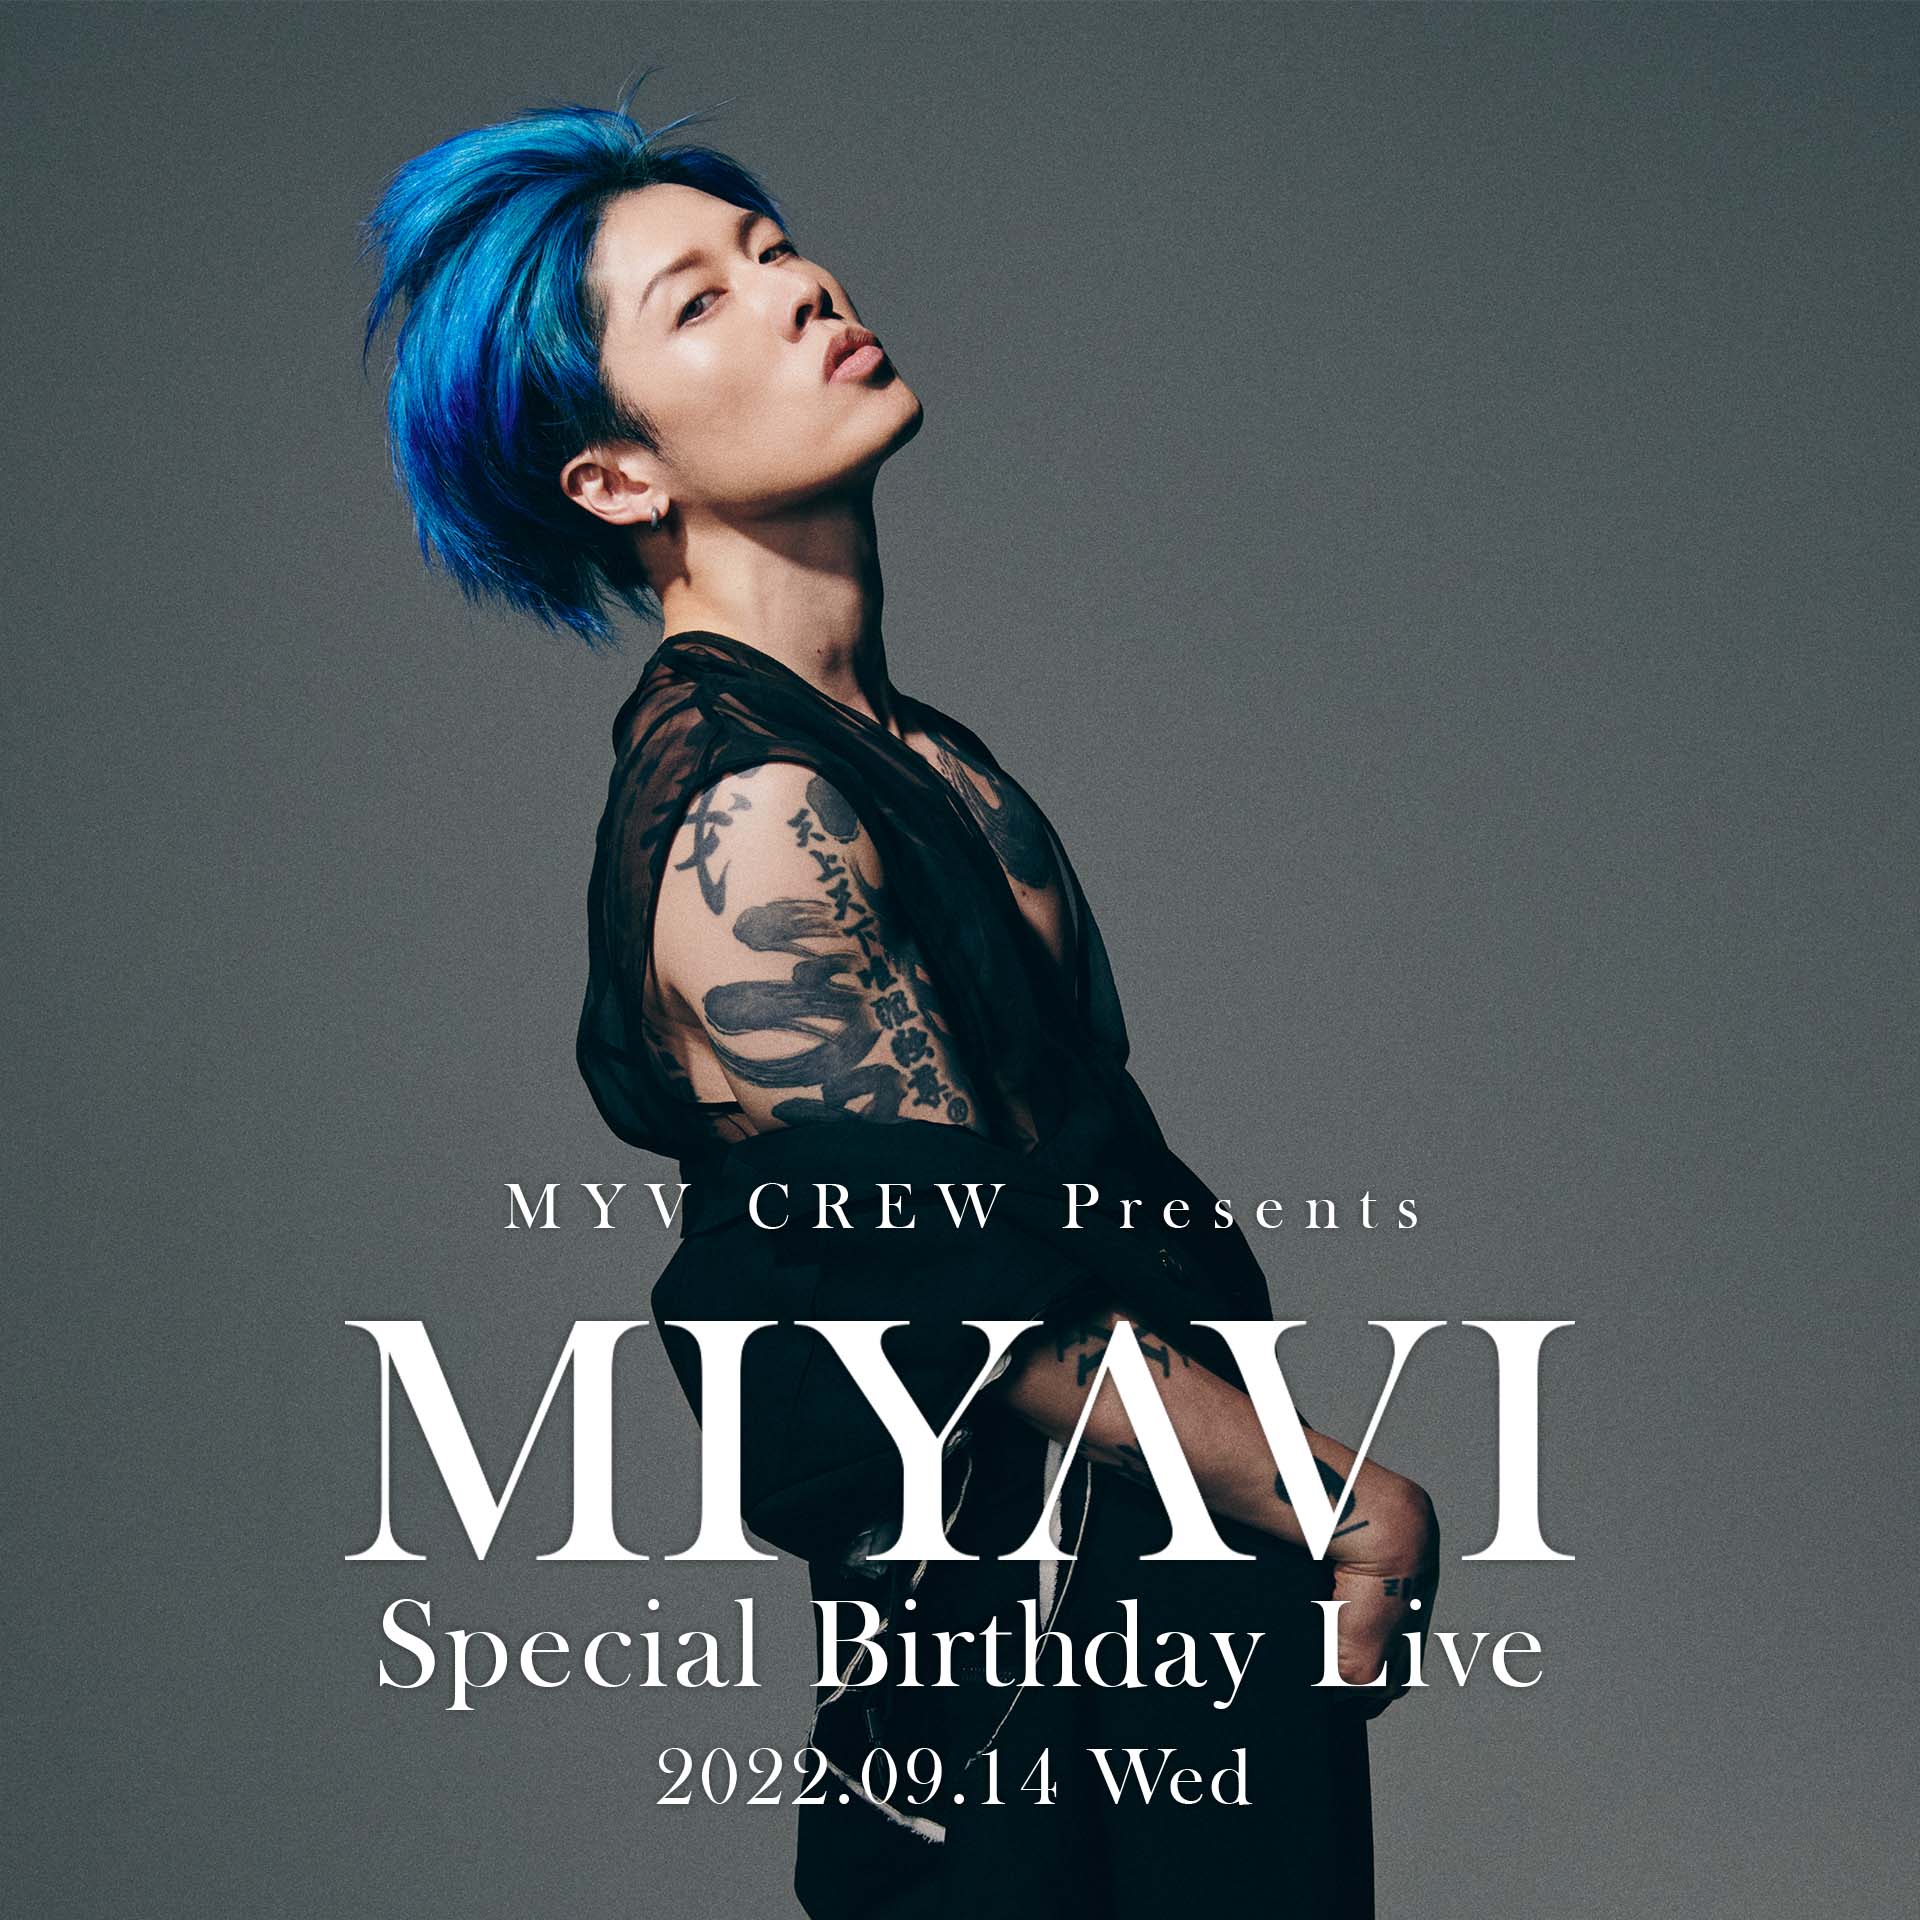 MYV CREW Presents MIYAVI Special Birthday Live| MIYAVI Official